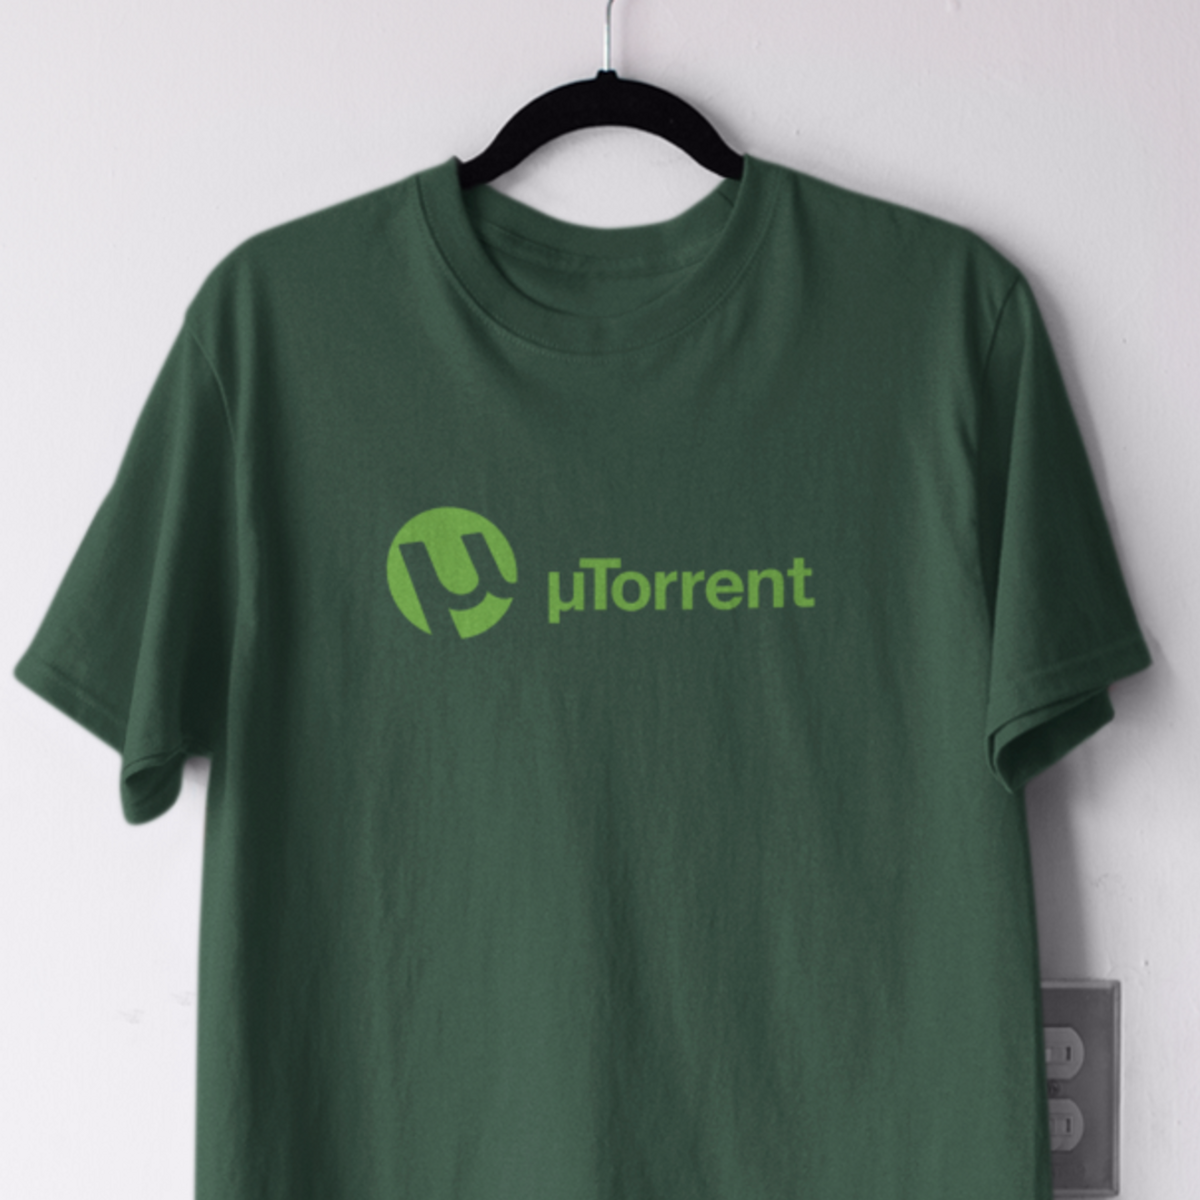 Nome do produto: Utorrent